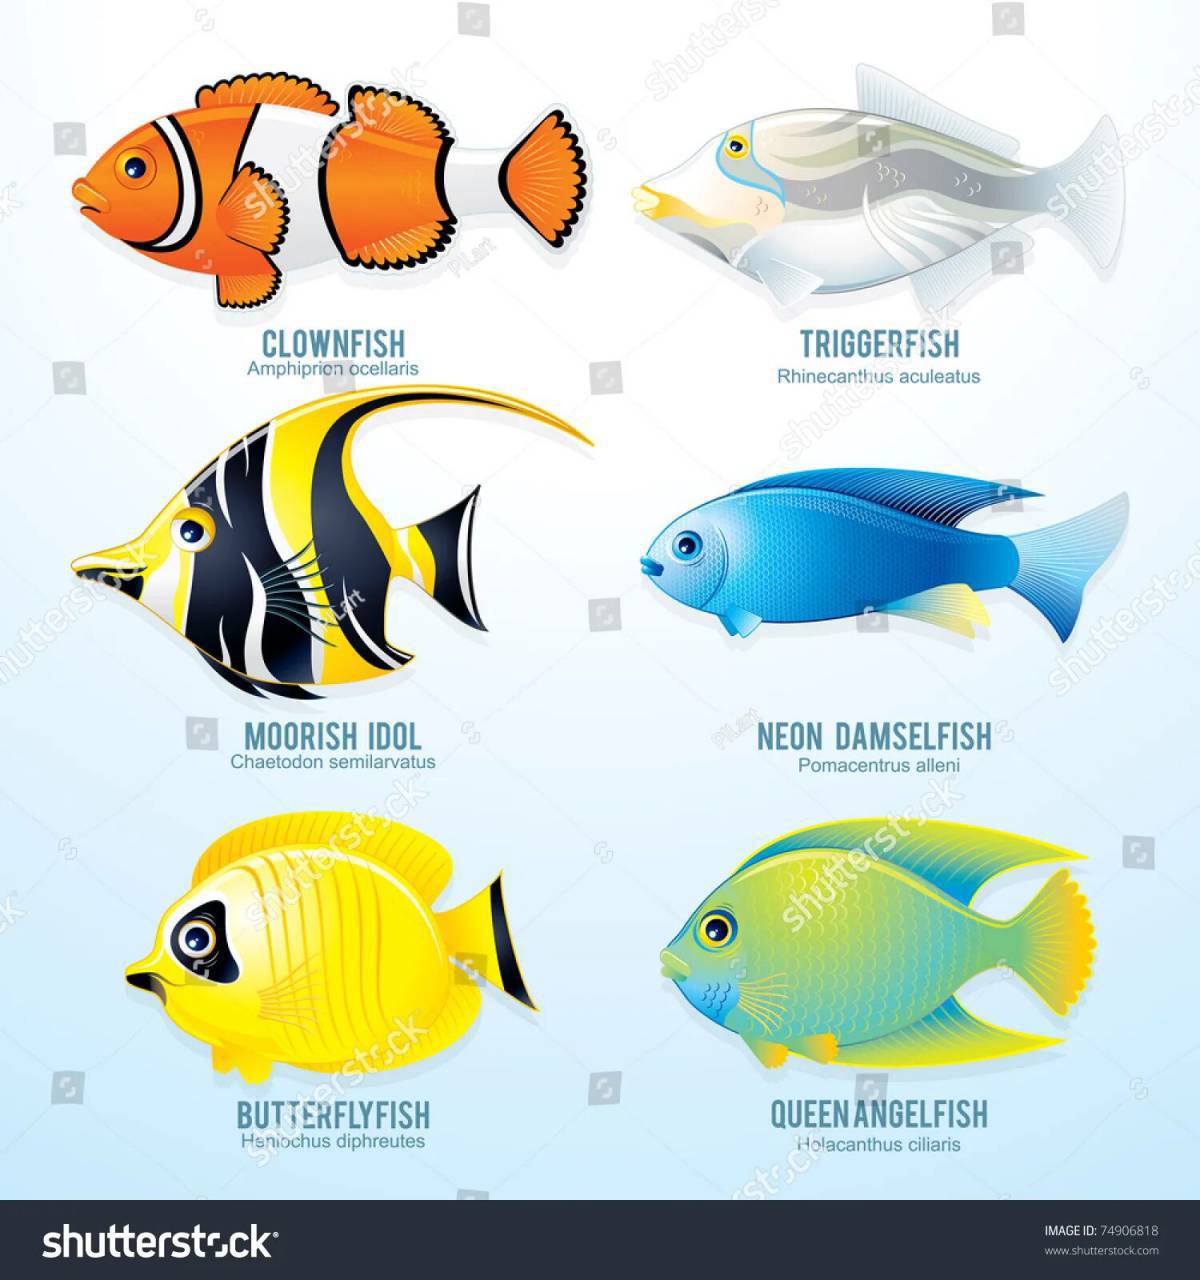 Аквариумные рыбки с названиями для детей #33